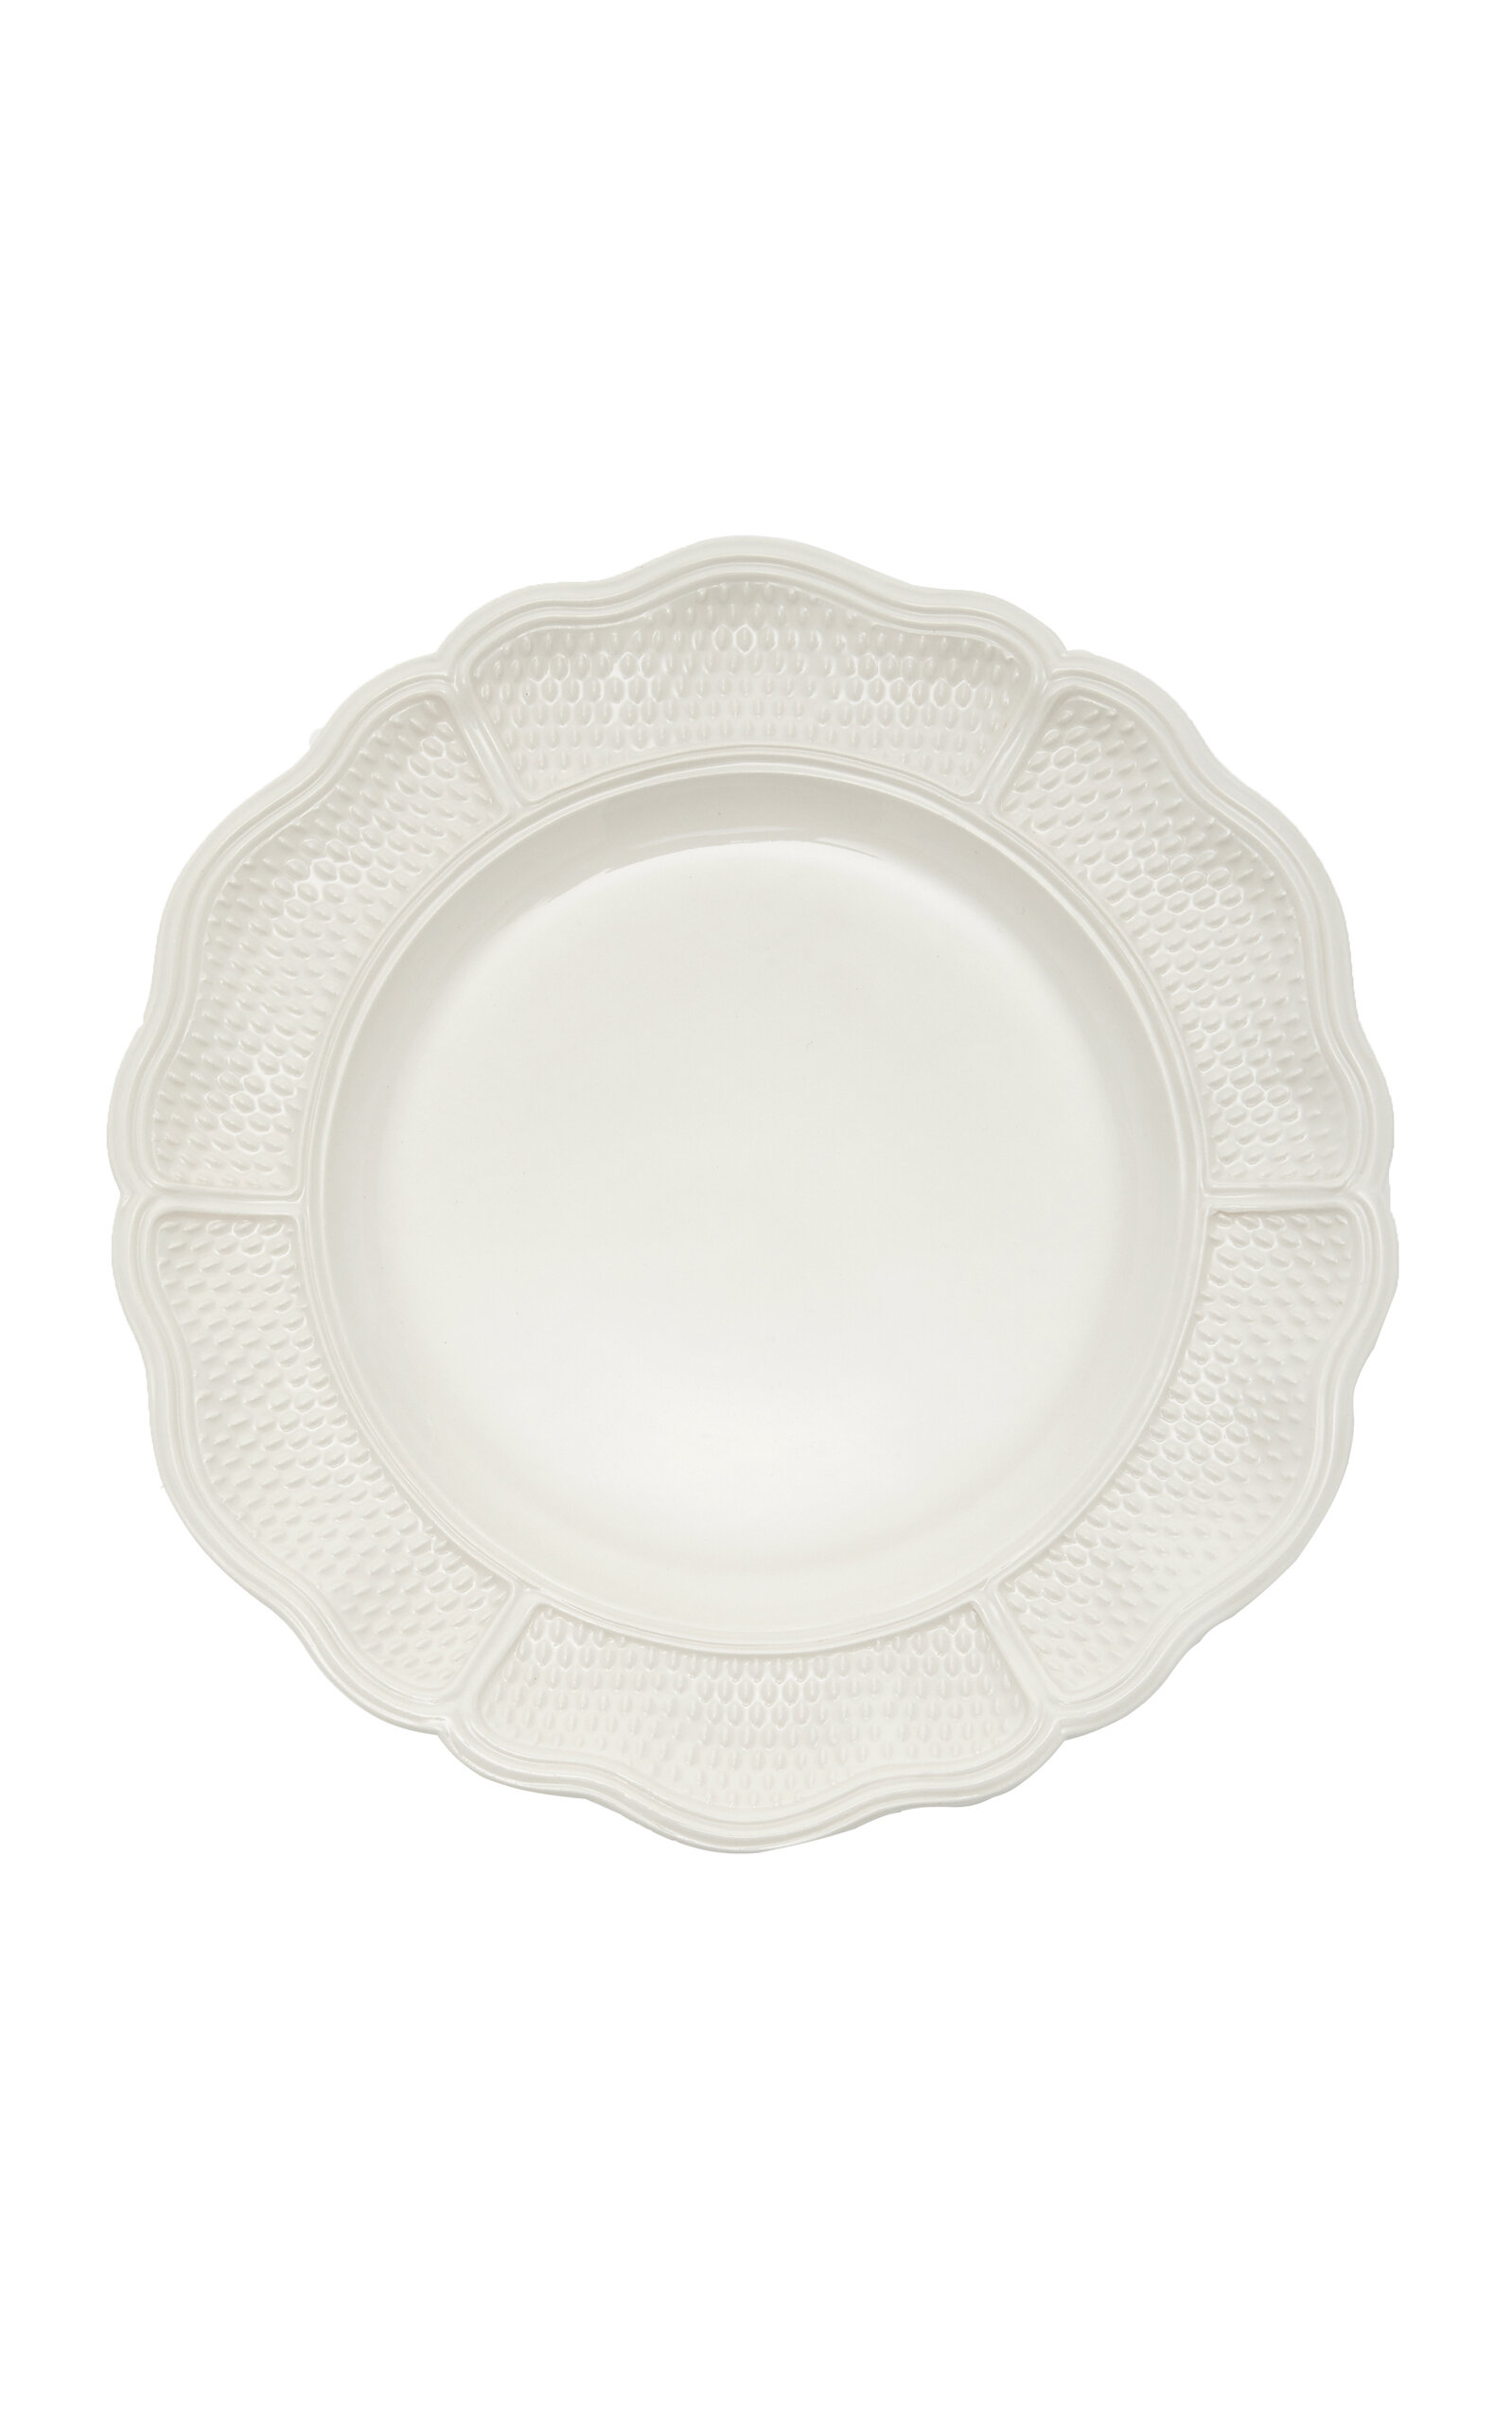 Moda Domus Doots Creamware Dinner Plate In White